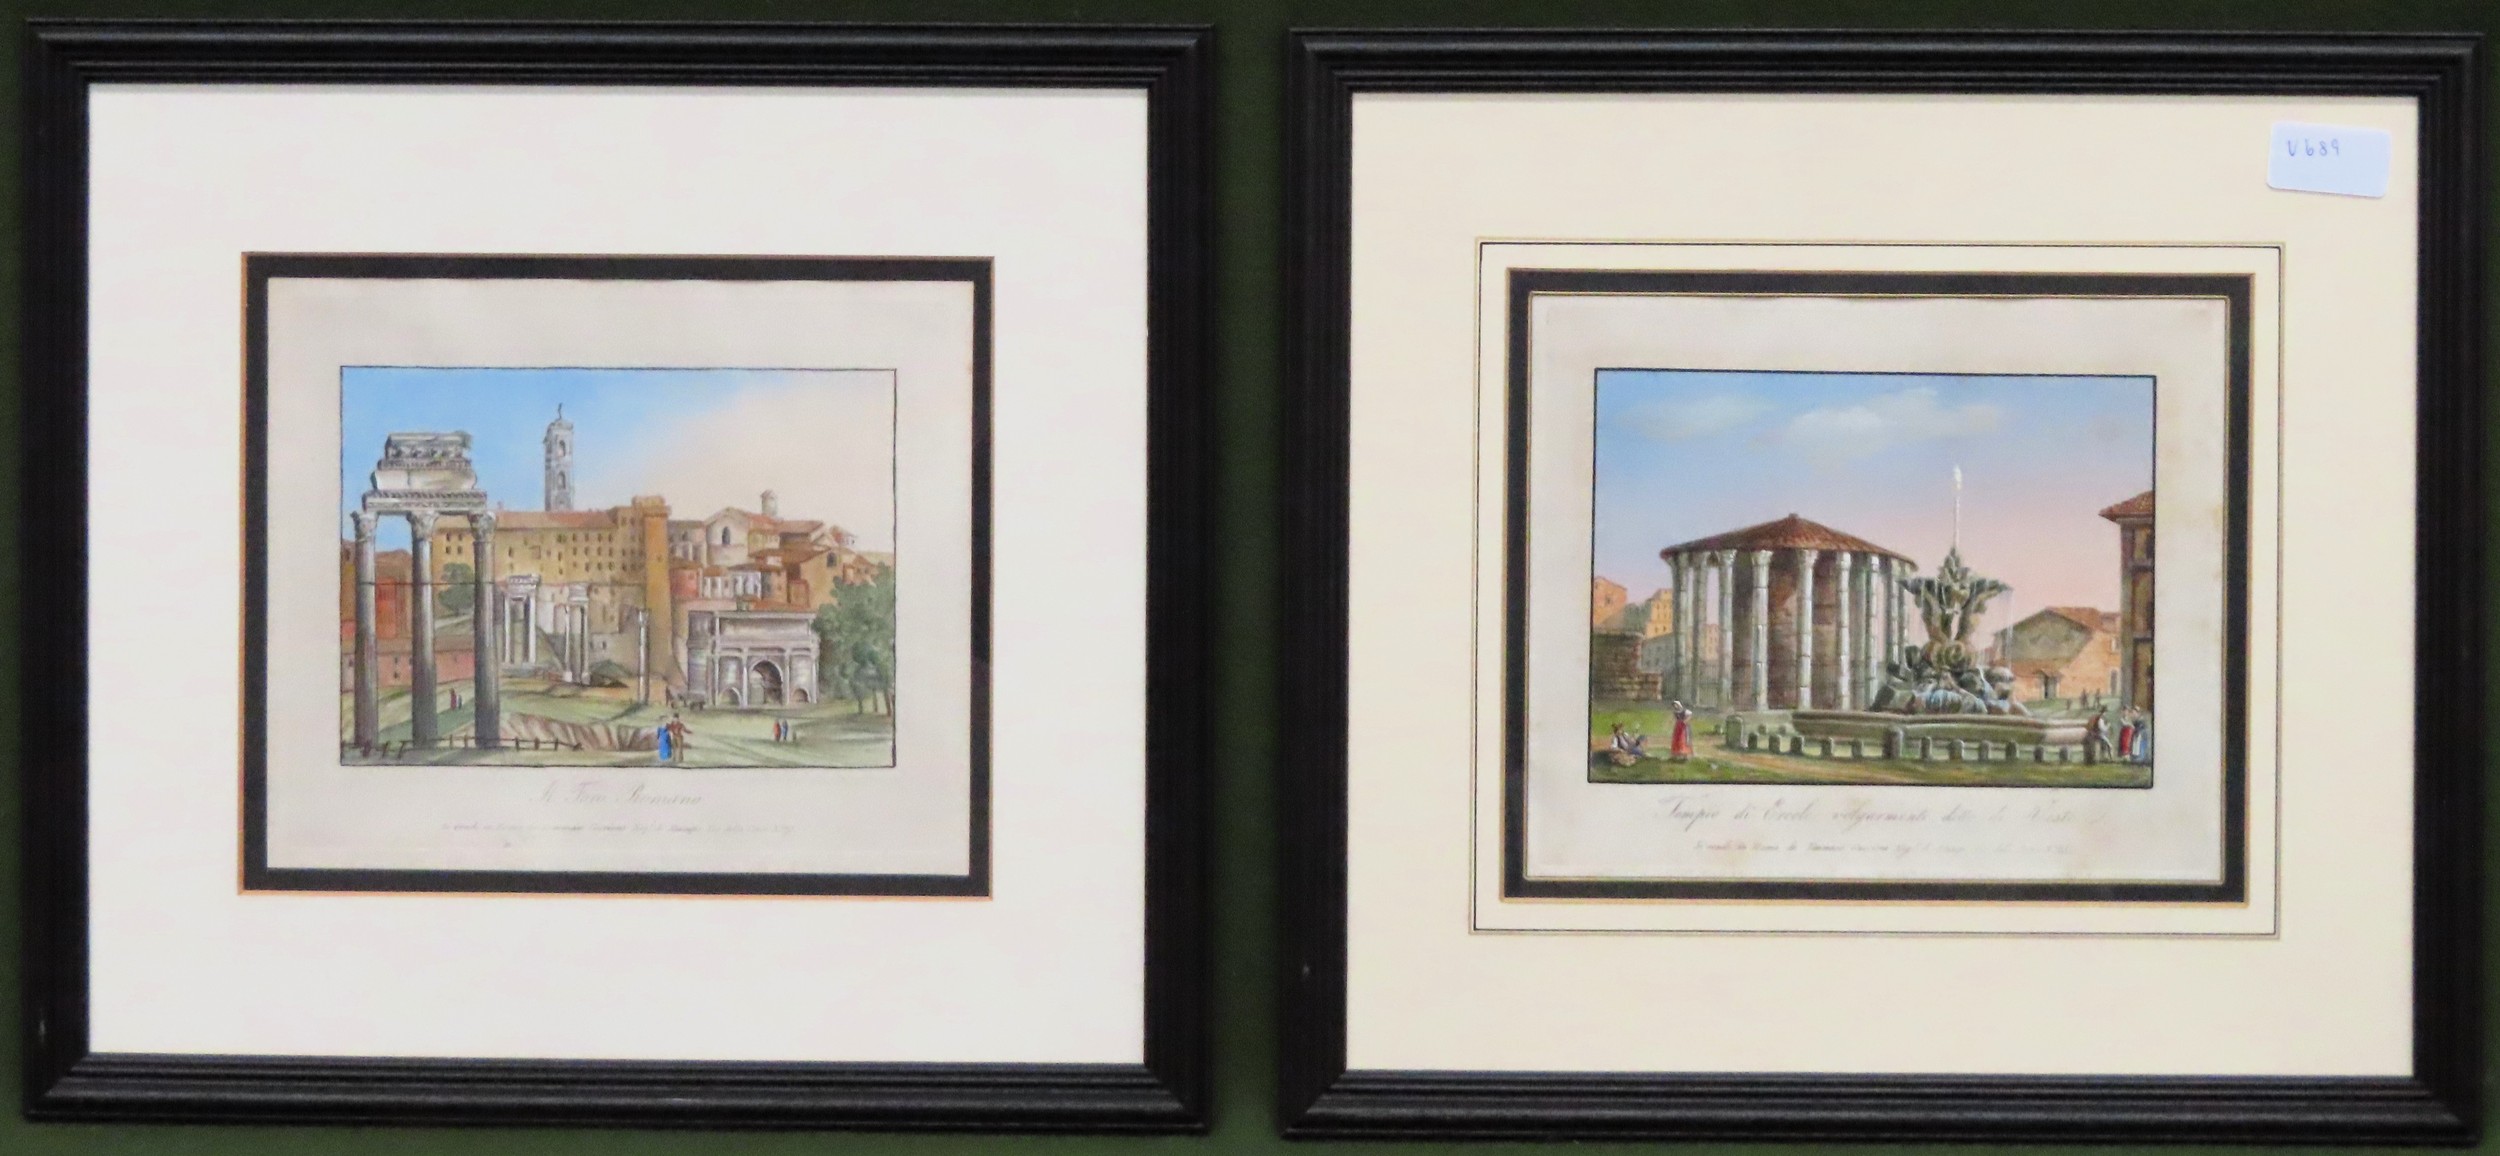 Pair of framed Italian scenes engravings, signed Gigu. App. 18.5 x 28cm Both appear in reasonable